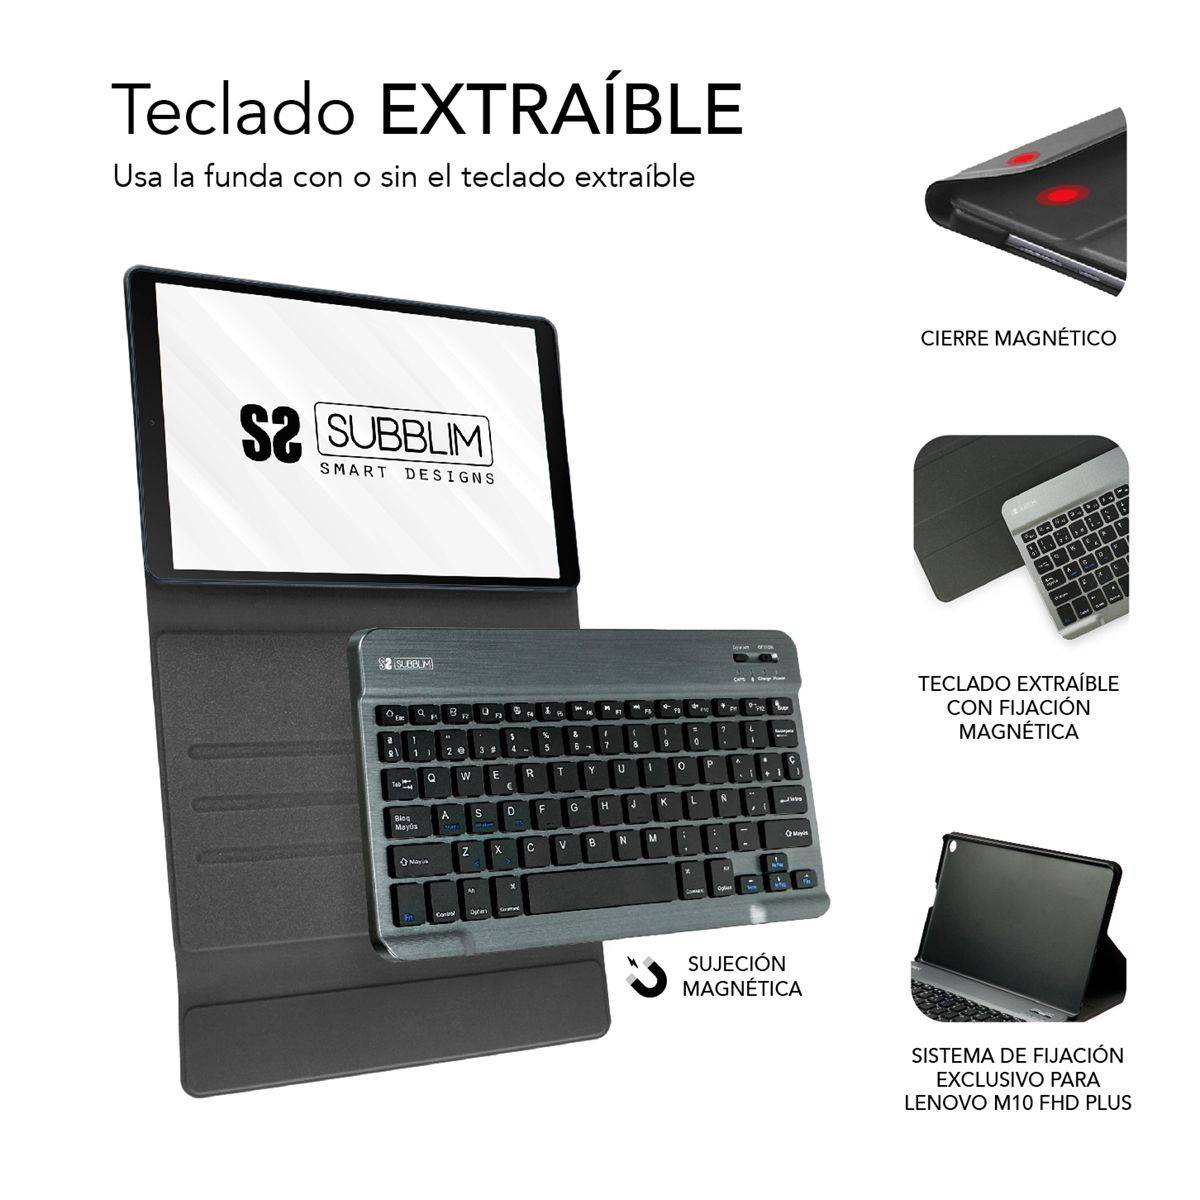 Funda Con Teclado En Español Para Lenovo Tab M10 TB-X606F y TB-X606X Negro